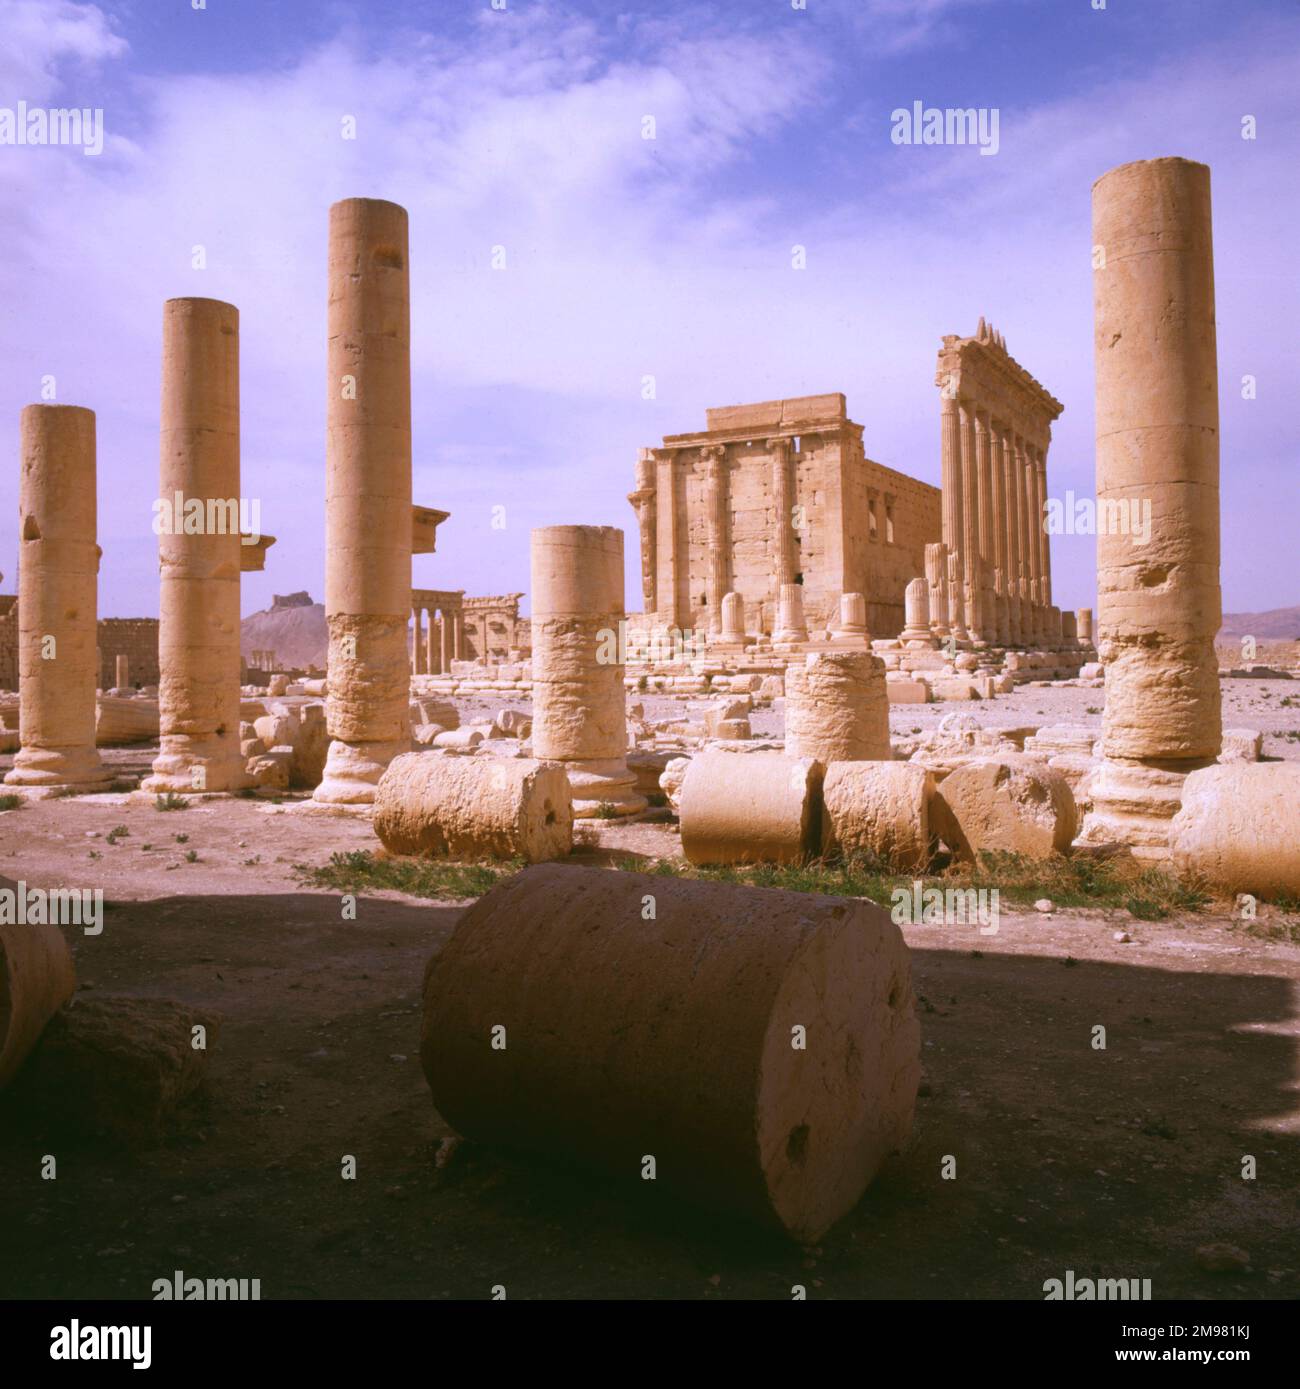 Palmyra, Syrie - colonnes et vue vers le Temple de Bel (Baal). Les ruines du temple ont été détruites par l'État islamique d'Irak et le Levant (ISIS) en août 2015. Banque D'Images